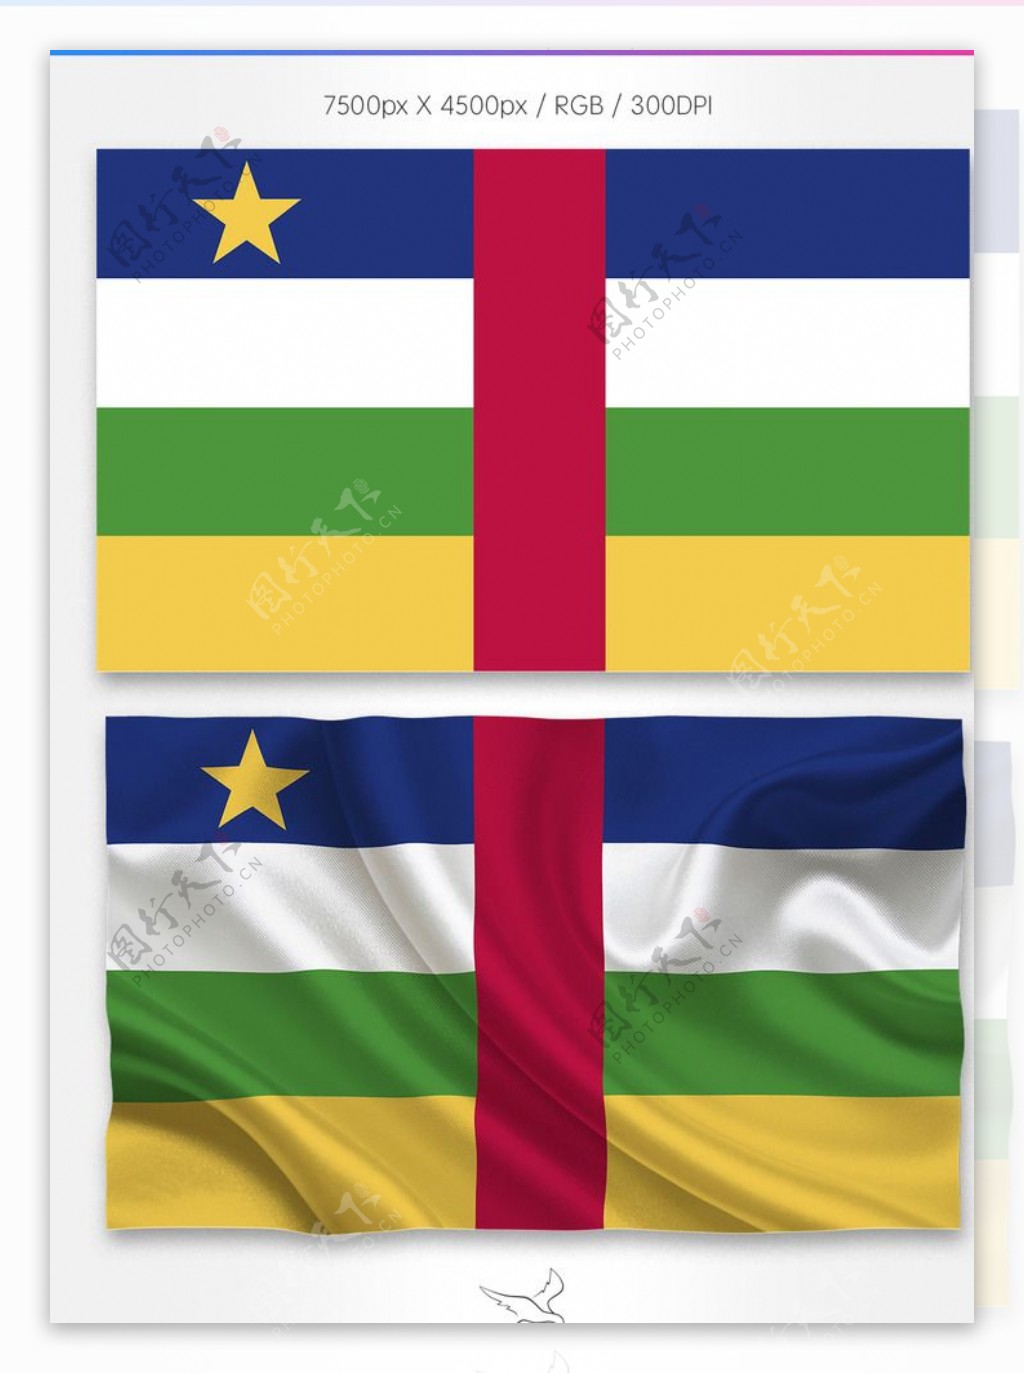 中非共和国国旗分层psd